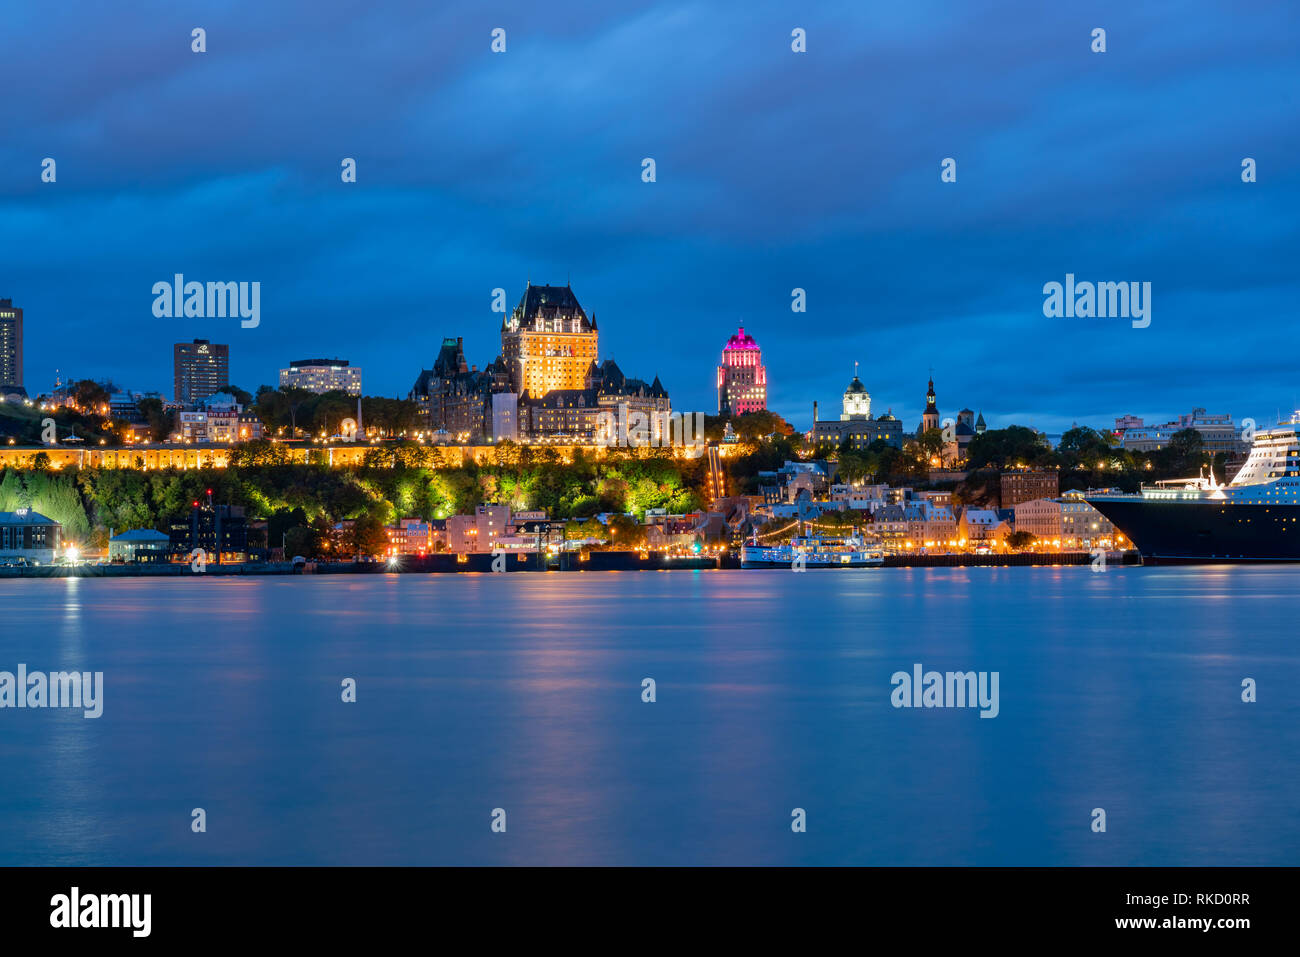 Vue de nuit de la ville de Québec avec l'hôtel Fairmont Le Château Frontenac à Québec, Canada Banque D'Images